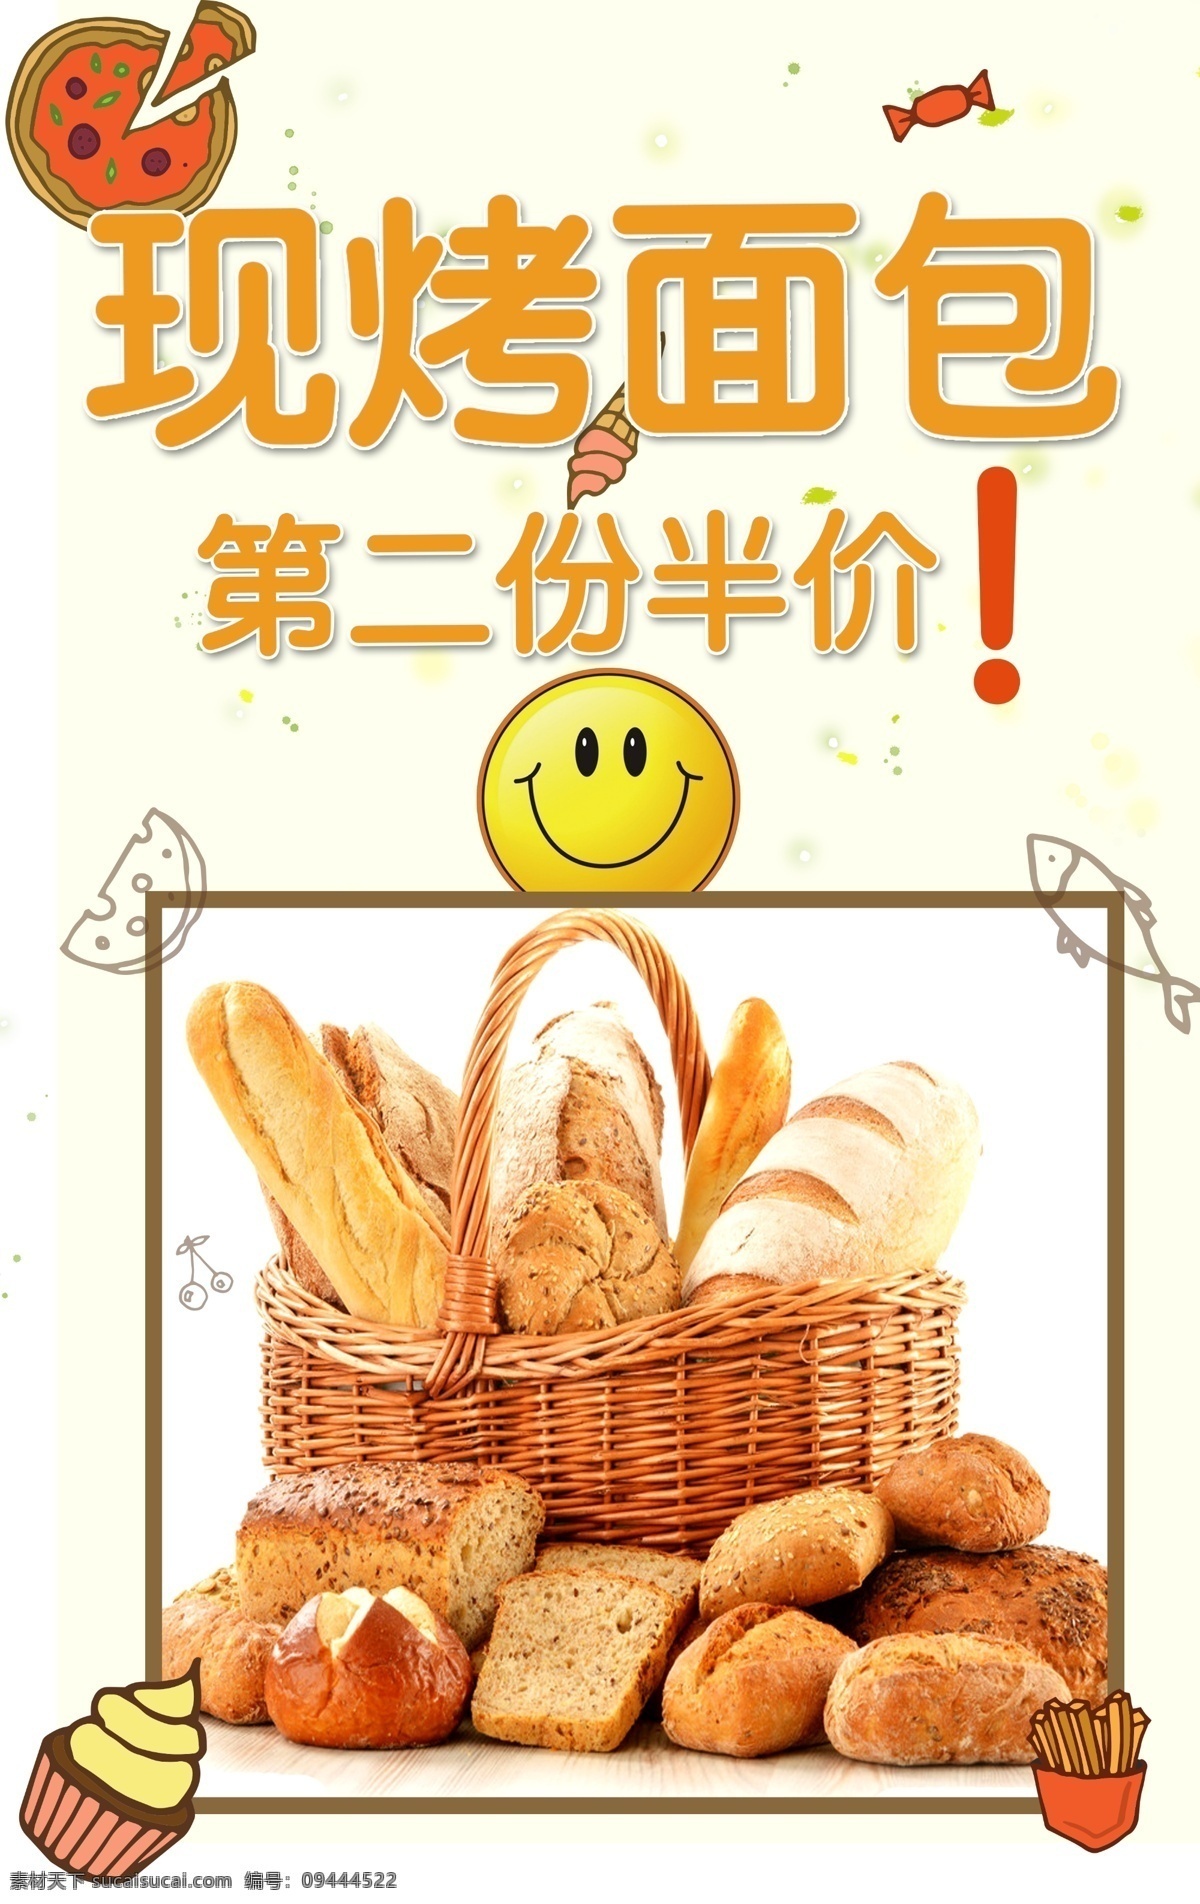 现烤面包 第二份半价 半价 面包 现烤 海报 室内广告设计